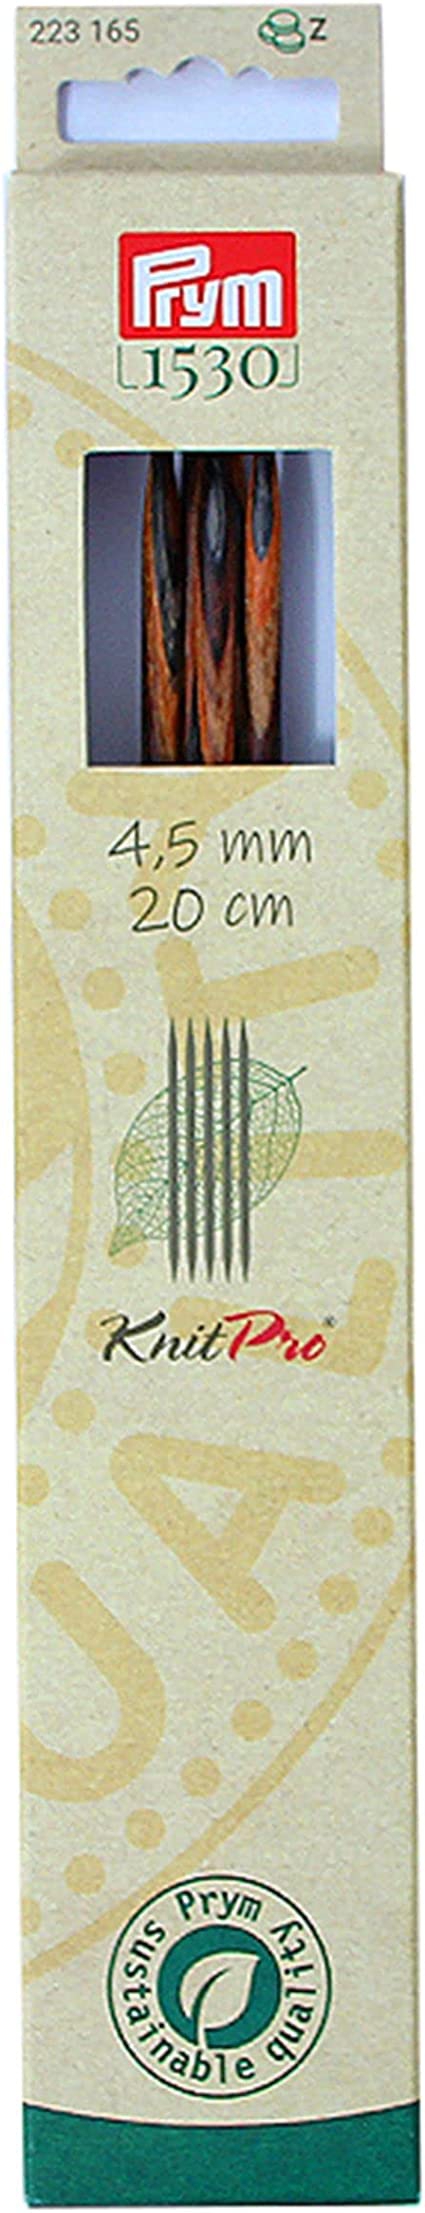 Knit Pro Strumpfstricknadeln, Natural, 20cm, 4,50mm Prym 223165